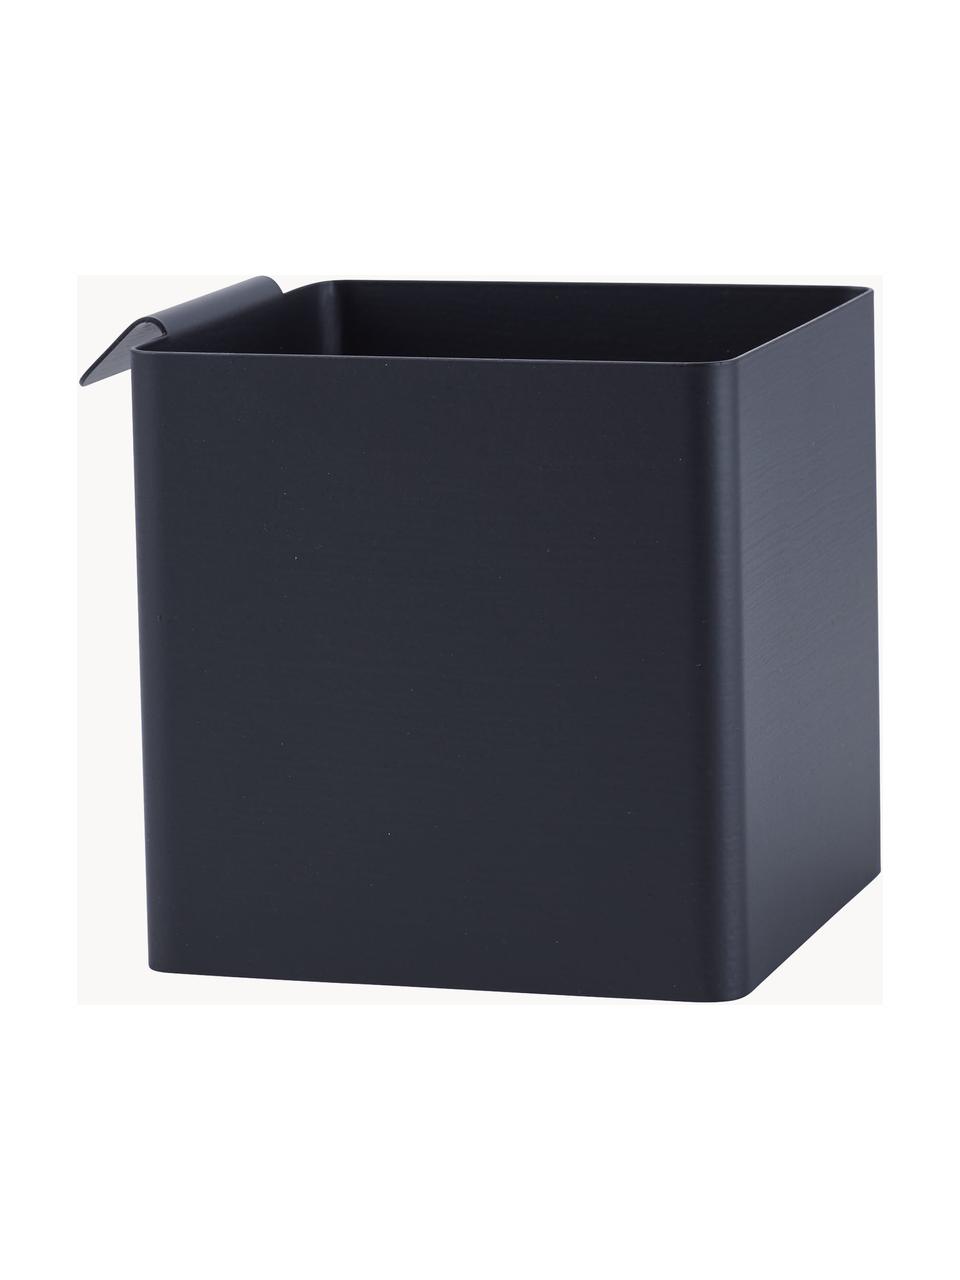 Stahl-Küchenaufbewahrungsbox Flex, Stahl, beschichtet, Schwarz, B 11 x H 11 cm